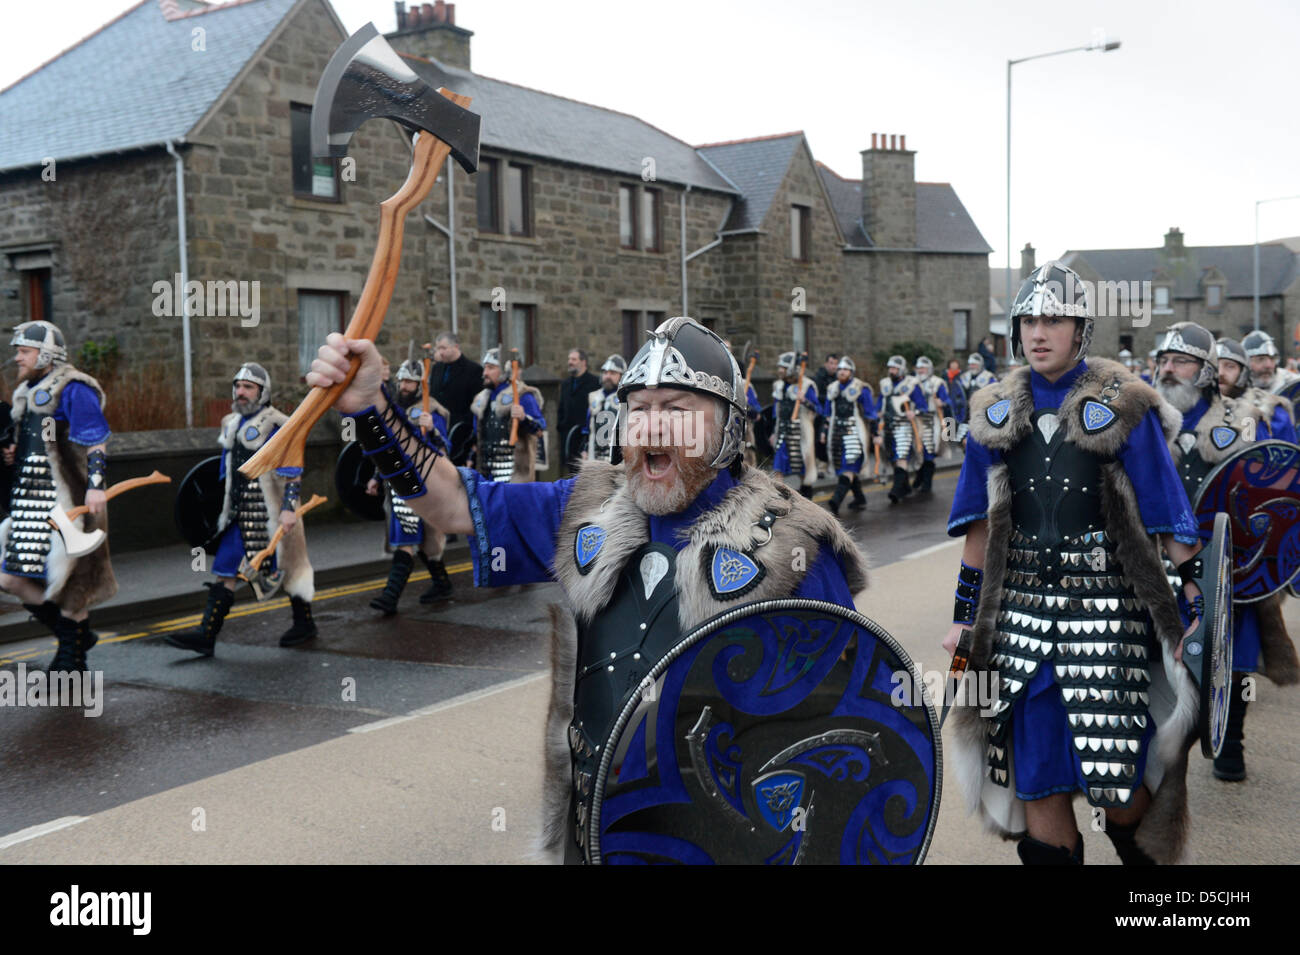 Up Helly Aa 2013 Europas größte Feuerfestival statt in Lerwick die Hauptstadt von Shetland Schottland, Vereinigtes Königreich Stockfoto